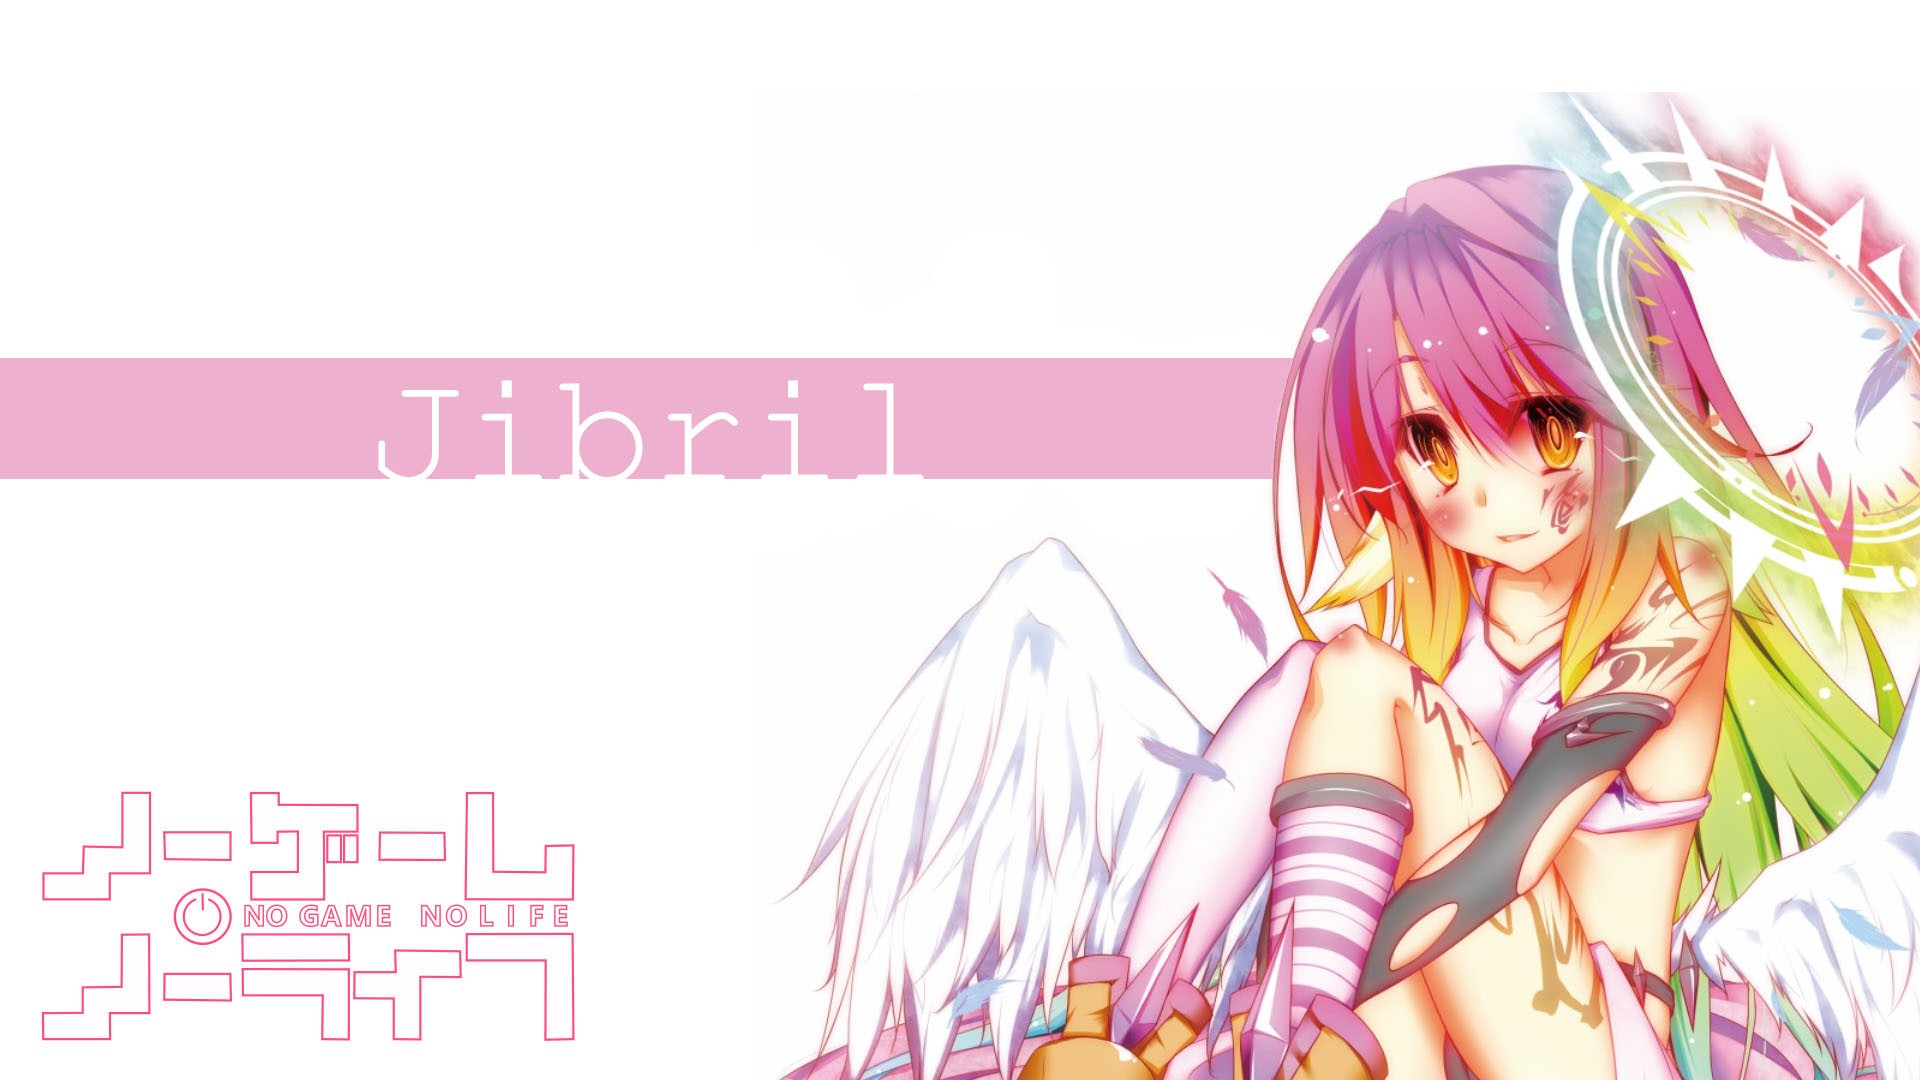 No Game No Life Jibril Anime Anime Girls 1920x1080